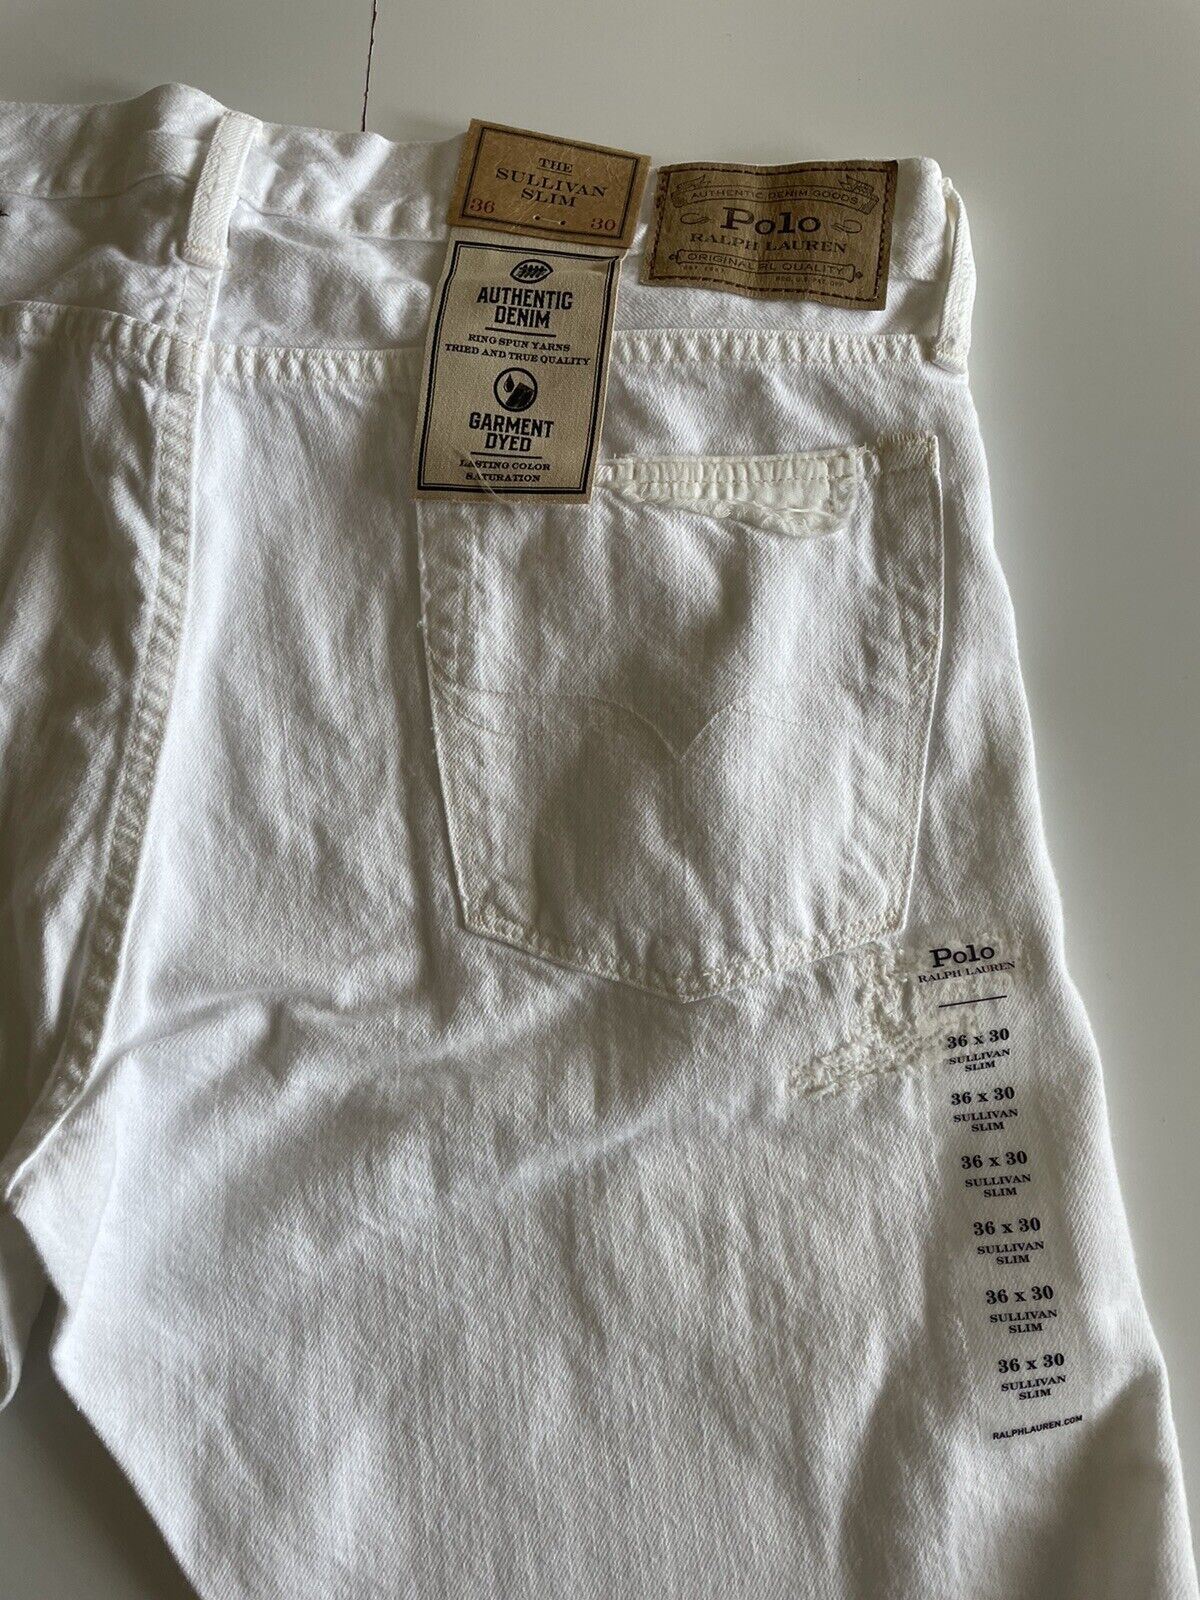 Neu mit Etikett: 188 $ Polo Ralph Lauren Herren-Jeans The Sullivan Slim in Weiß, Größe 36 x 32 (38 Zoll)